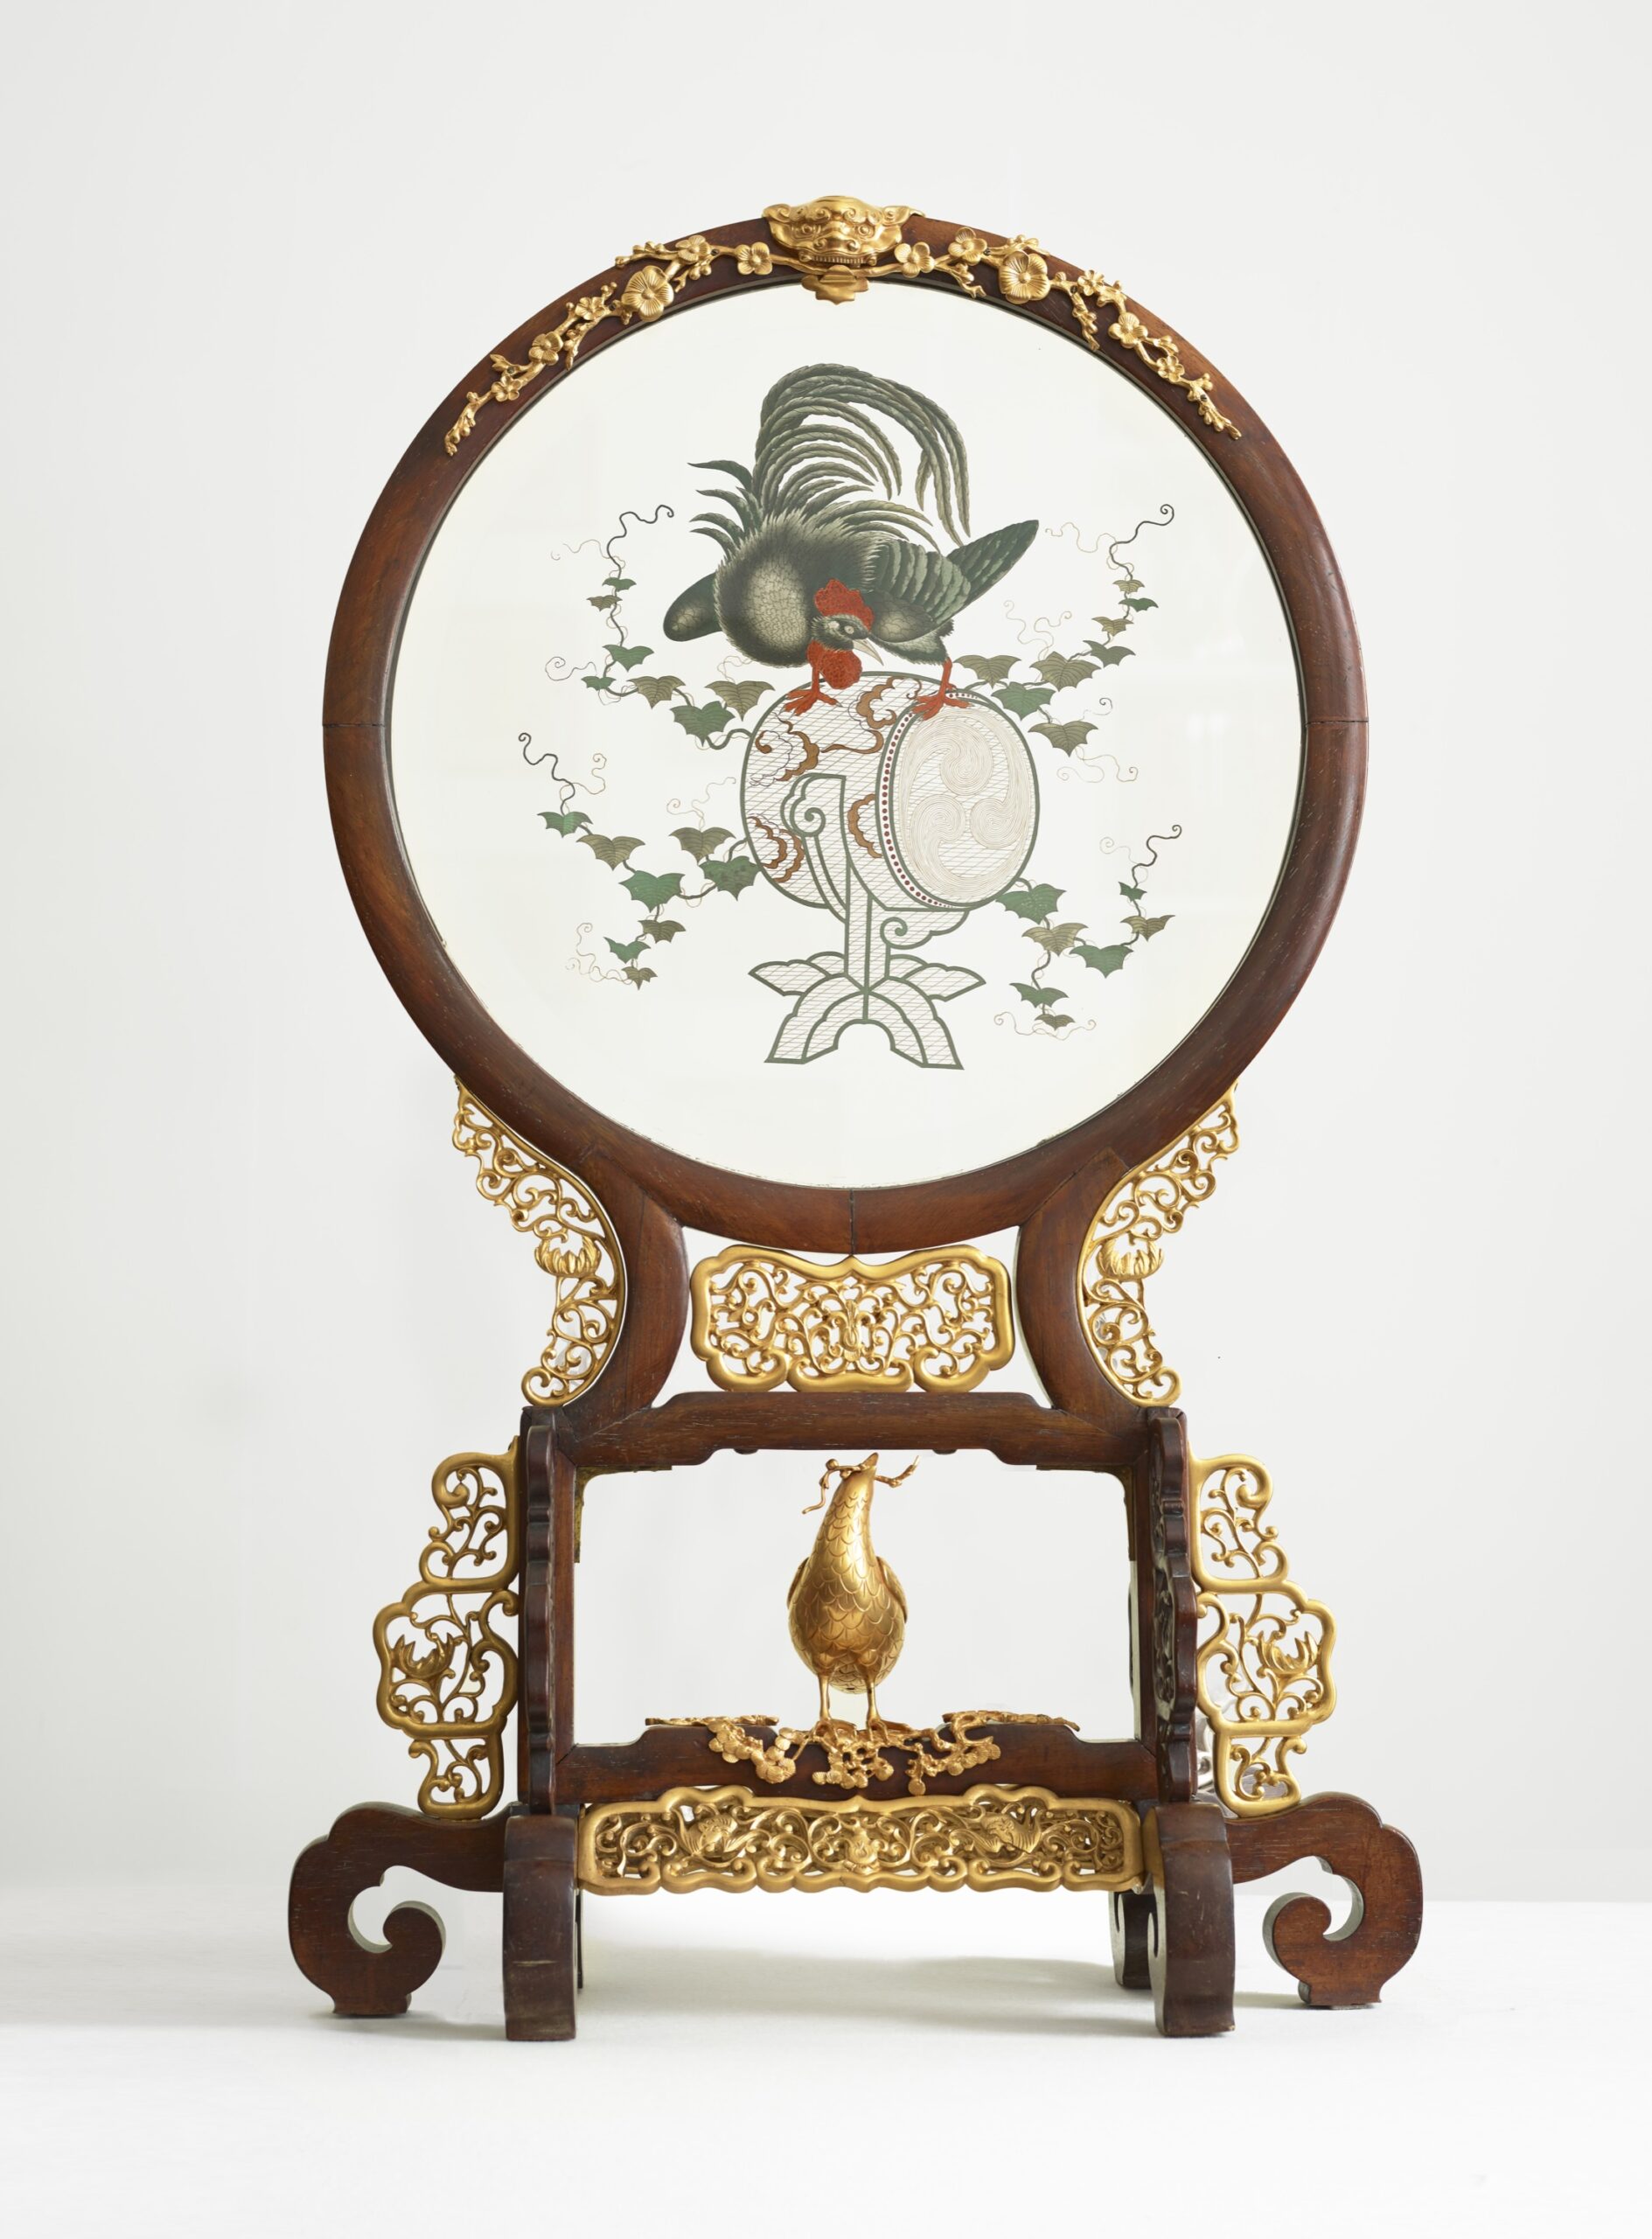 Henry Pannier (1885-1935), Écran circulaire japonais, vers 1890. Cristal peint enchâssé dans une monture en bois, 97 x 59 x 26 cm. Paris, galerie Didier Luttenbacher. Photo service de presse. © Didier Luttenbacher